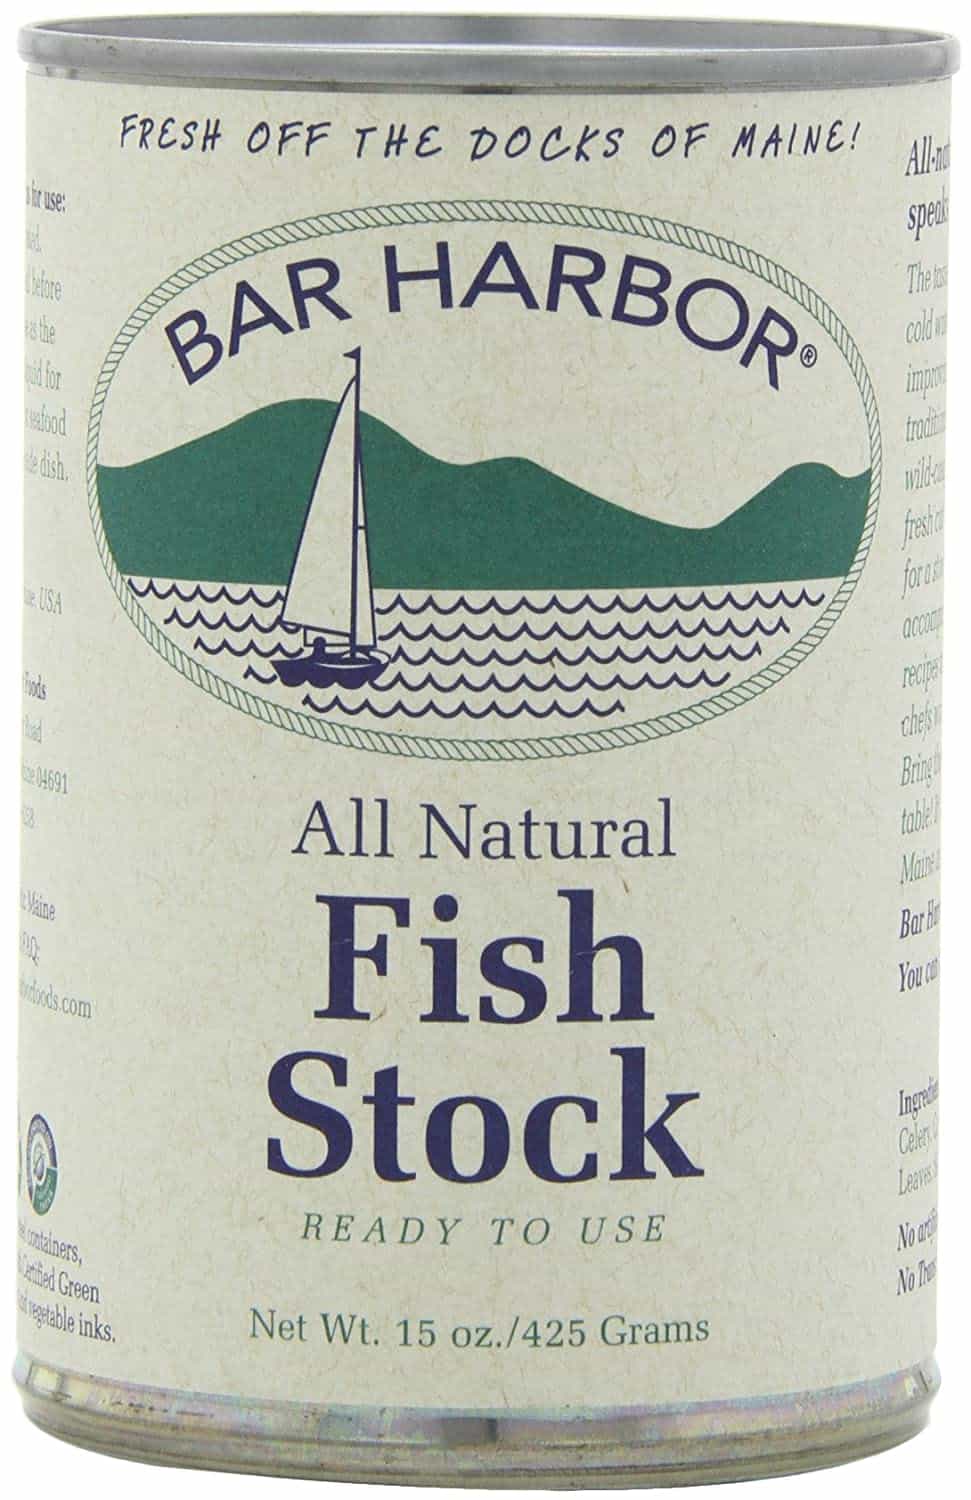 Estoque de peixe de Bar Harbor